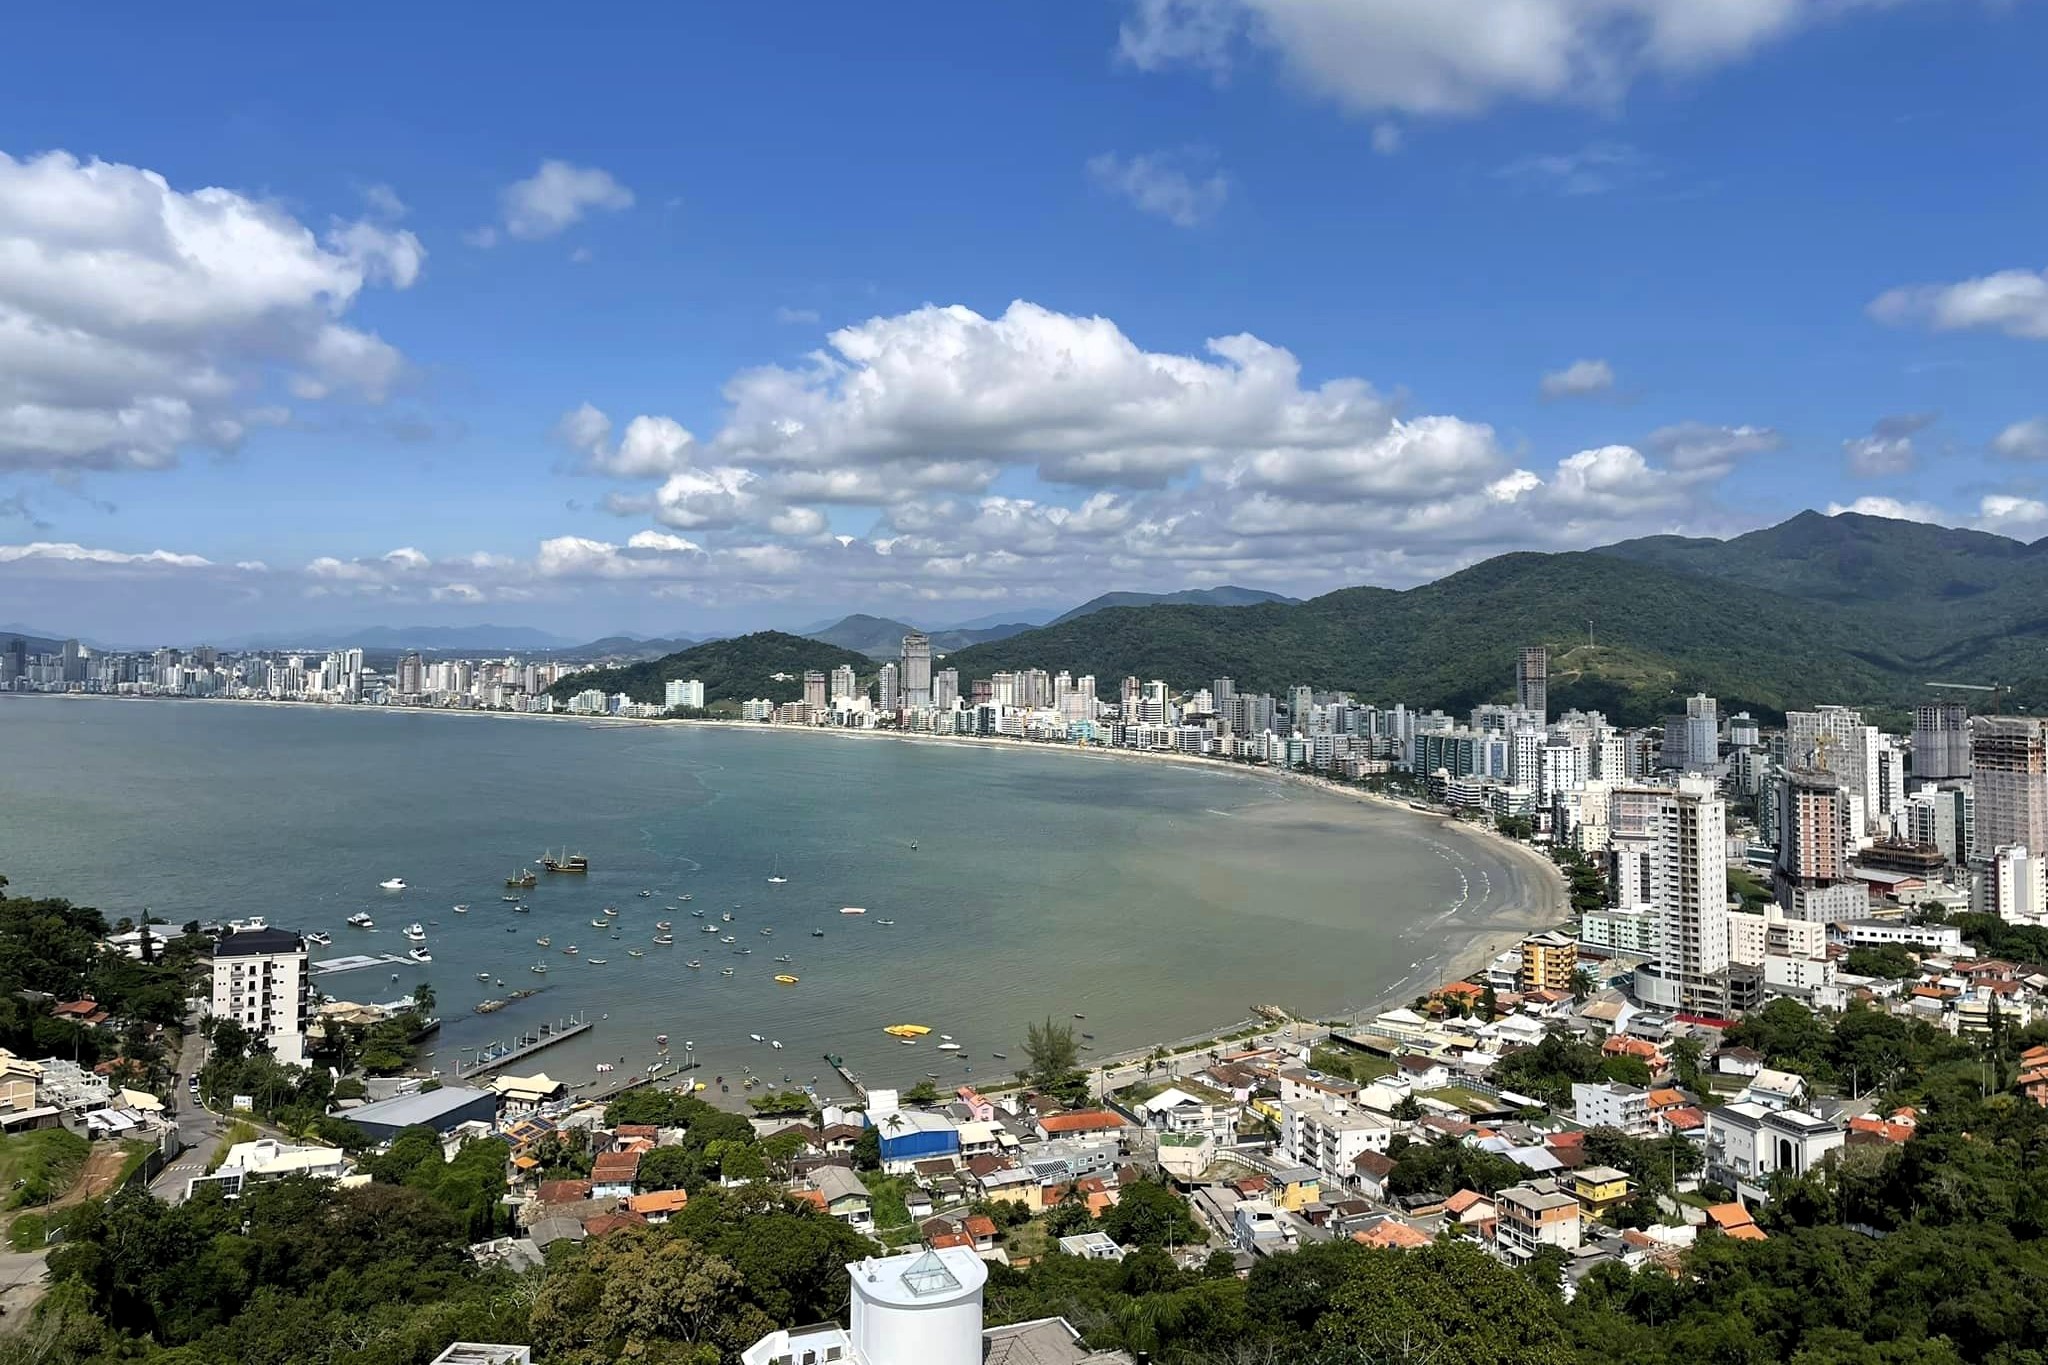 Découvrez les meilleures villes balnéaires où vivre au Brésil, les villes qui offrent la meilleure qualité de vie.